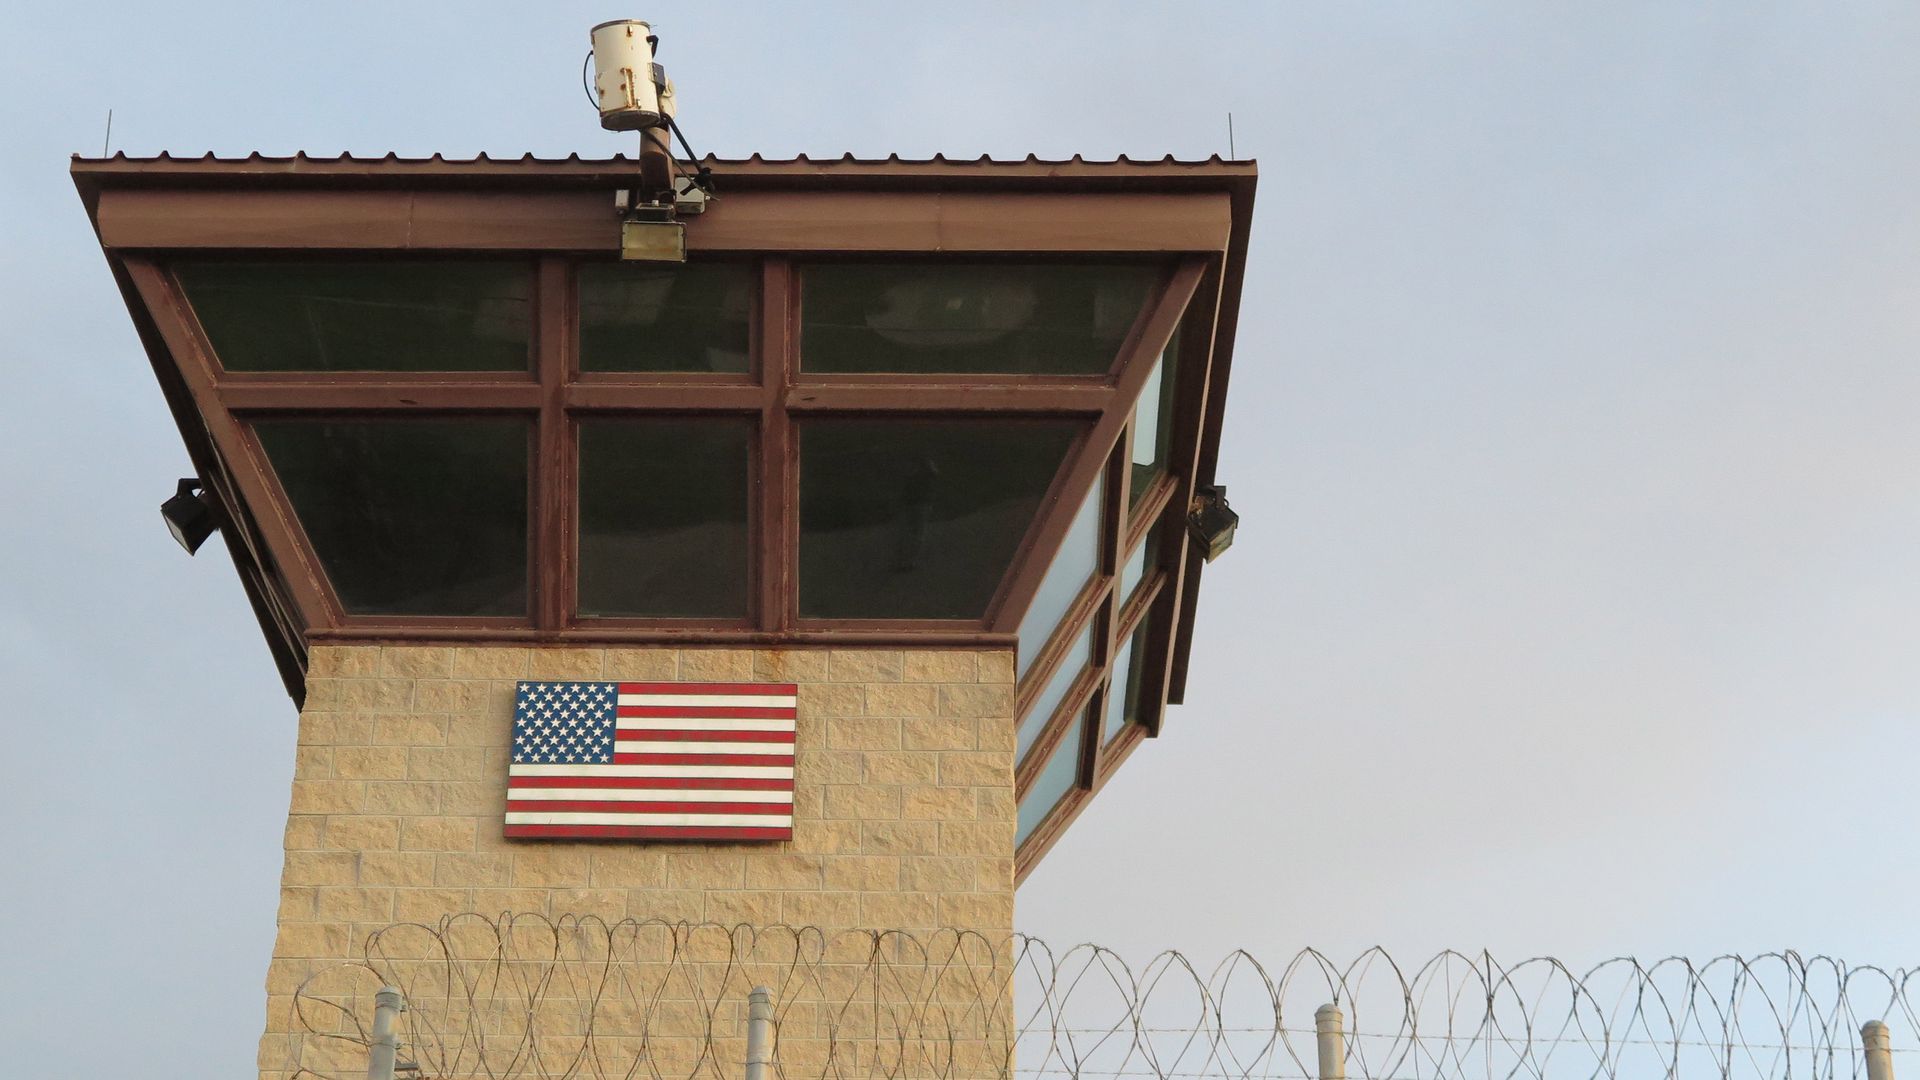 The U.S. base at Guantanamo Bay, Cuba.